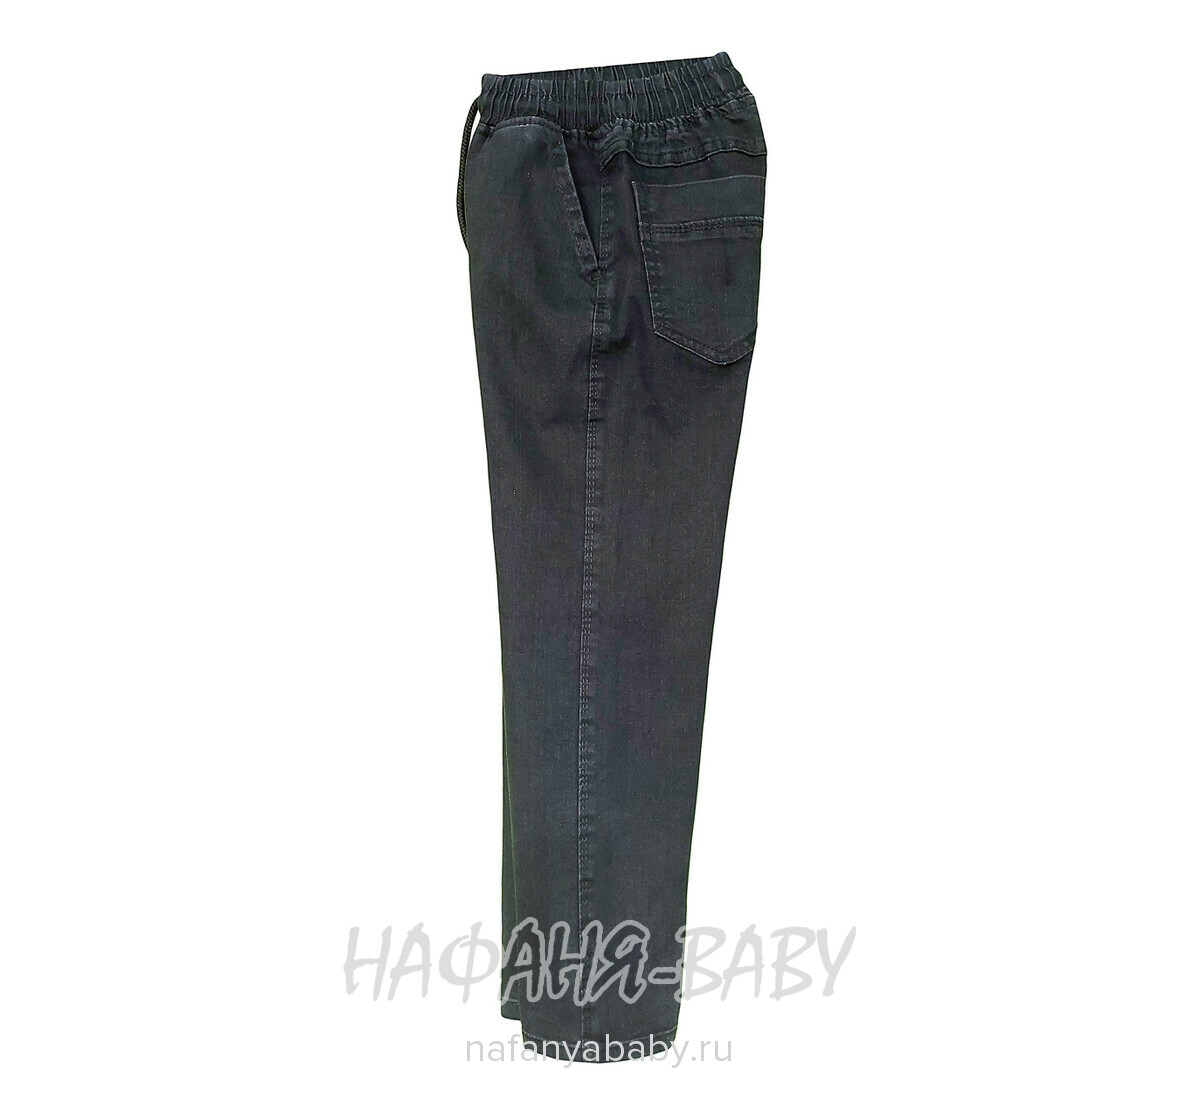 Подростковые джинсы GOCER арт: 4482 для мальчика 8-12 лет, цвет черный, оптом Турция